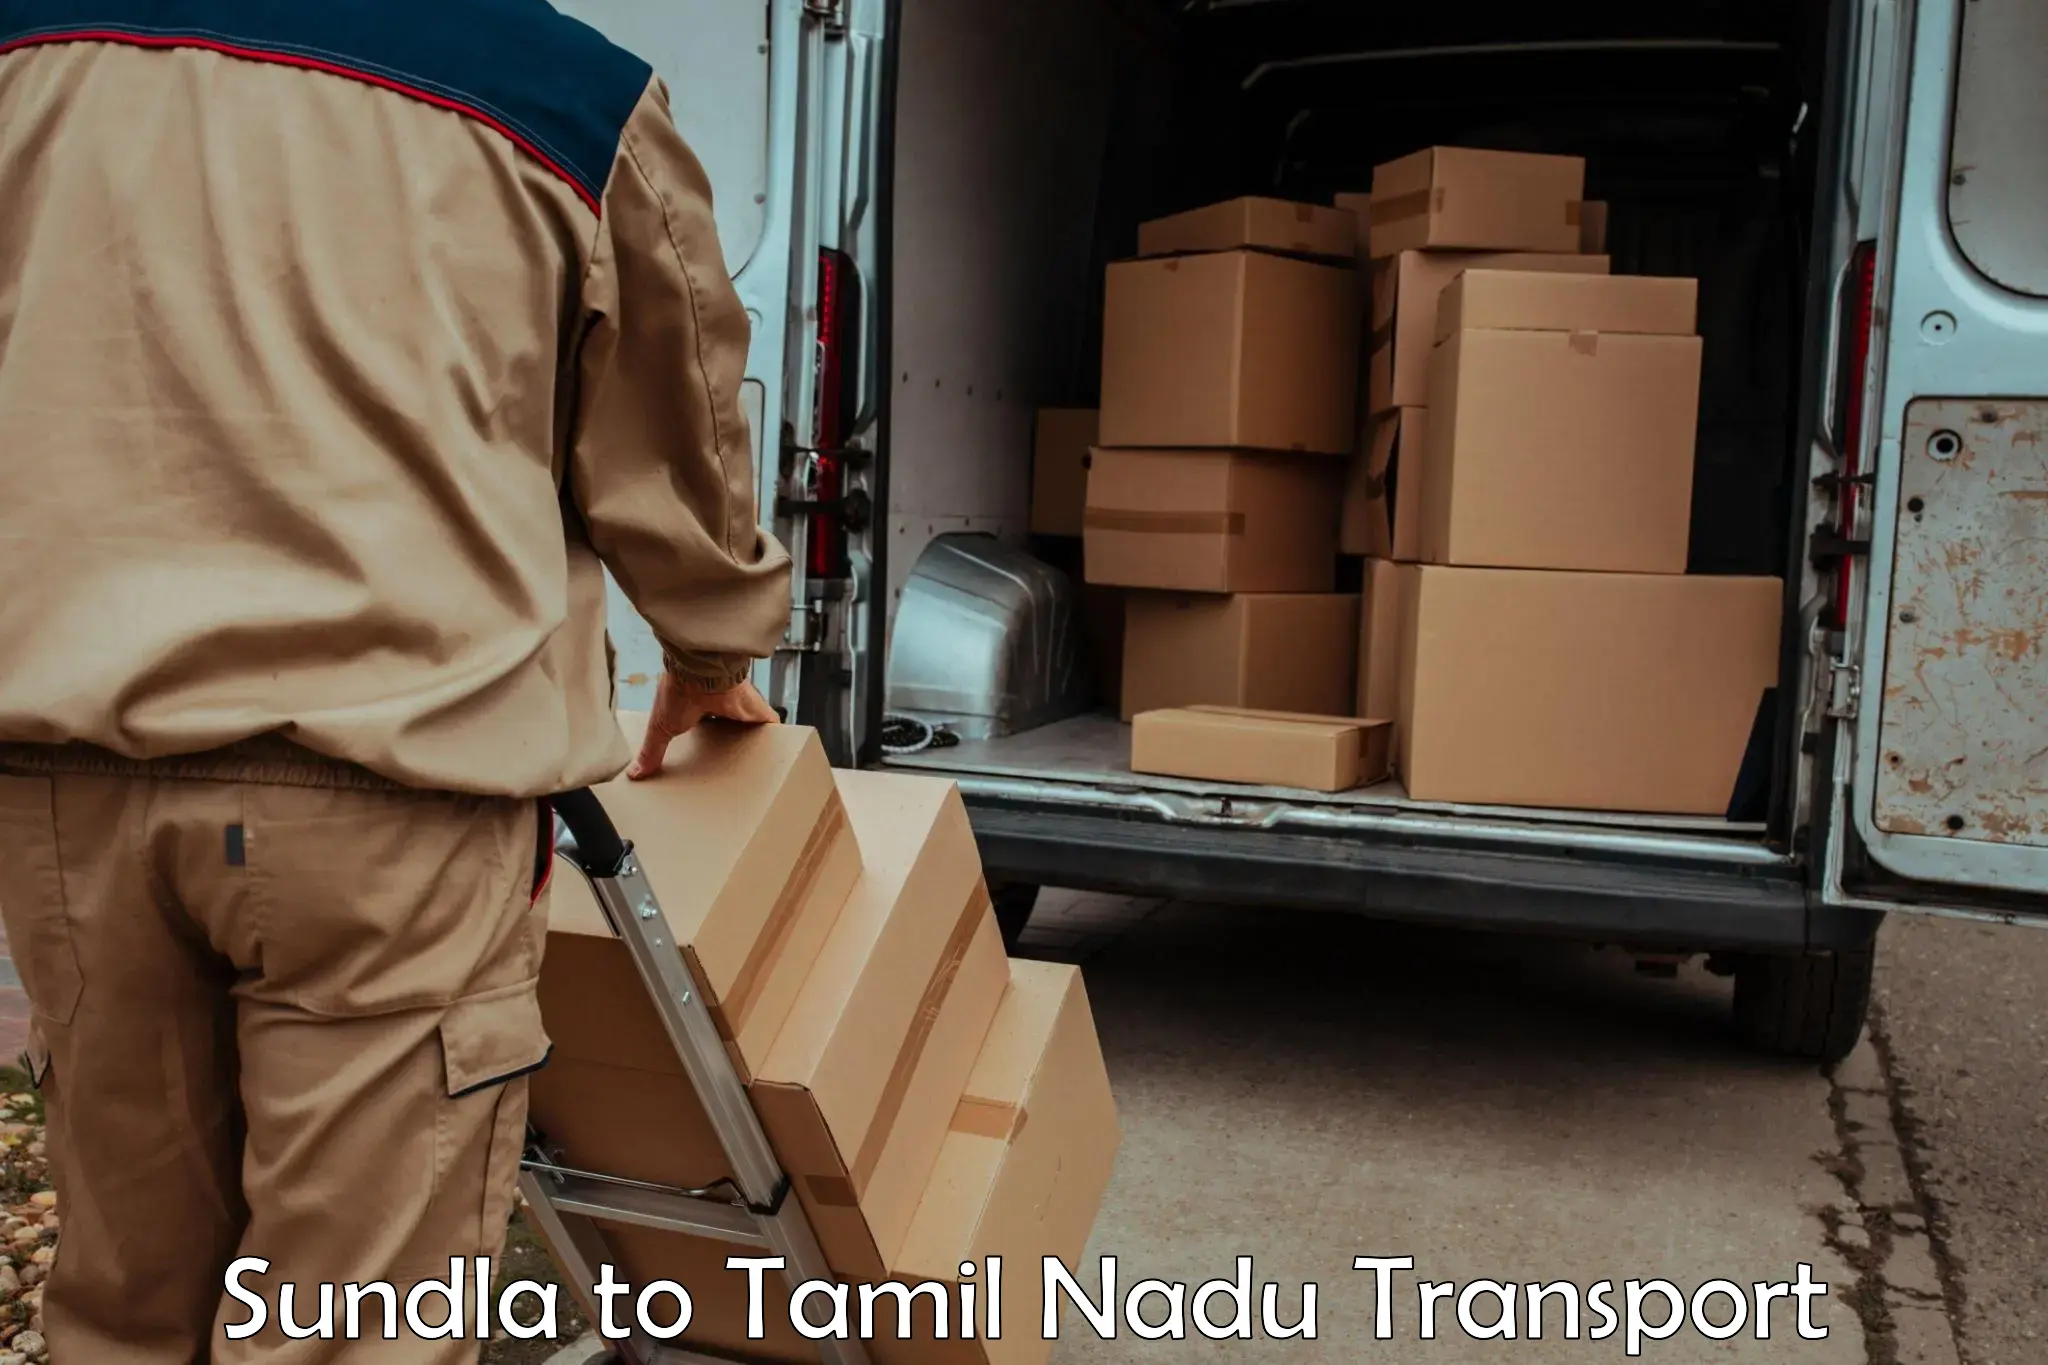 International cargo transportation services Sundla to Tirupattur